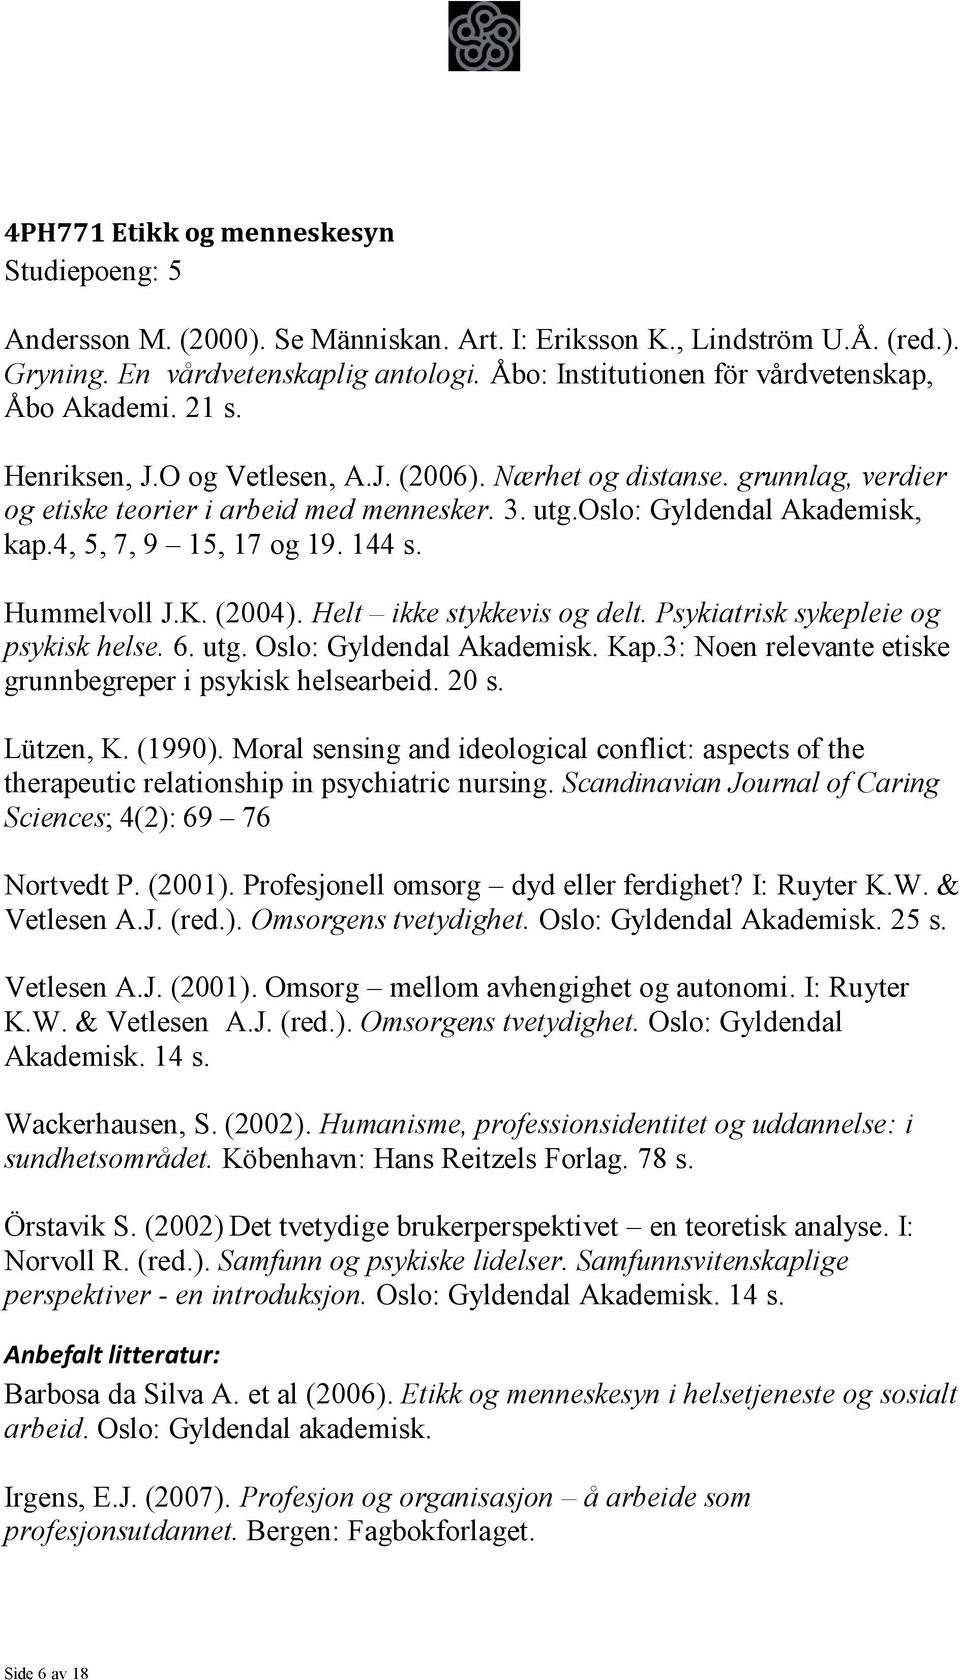 oslo: Gyldendal Akademisk, kap.4, 5, 7, 9 15, 17 og 19. 144 s. Hummelvoll J.K. (2004). Helt ikke stykkevis og delt. Psykiatrisk sykepleie og psykisk helse. 6. utg. Oslo: Gyldendal Akademisk. Kap.